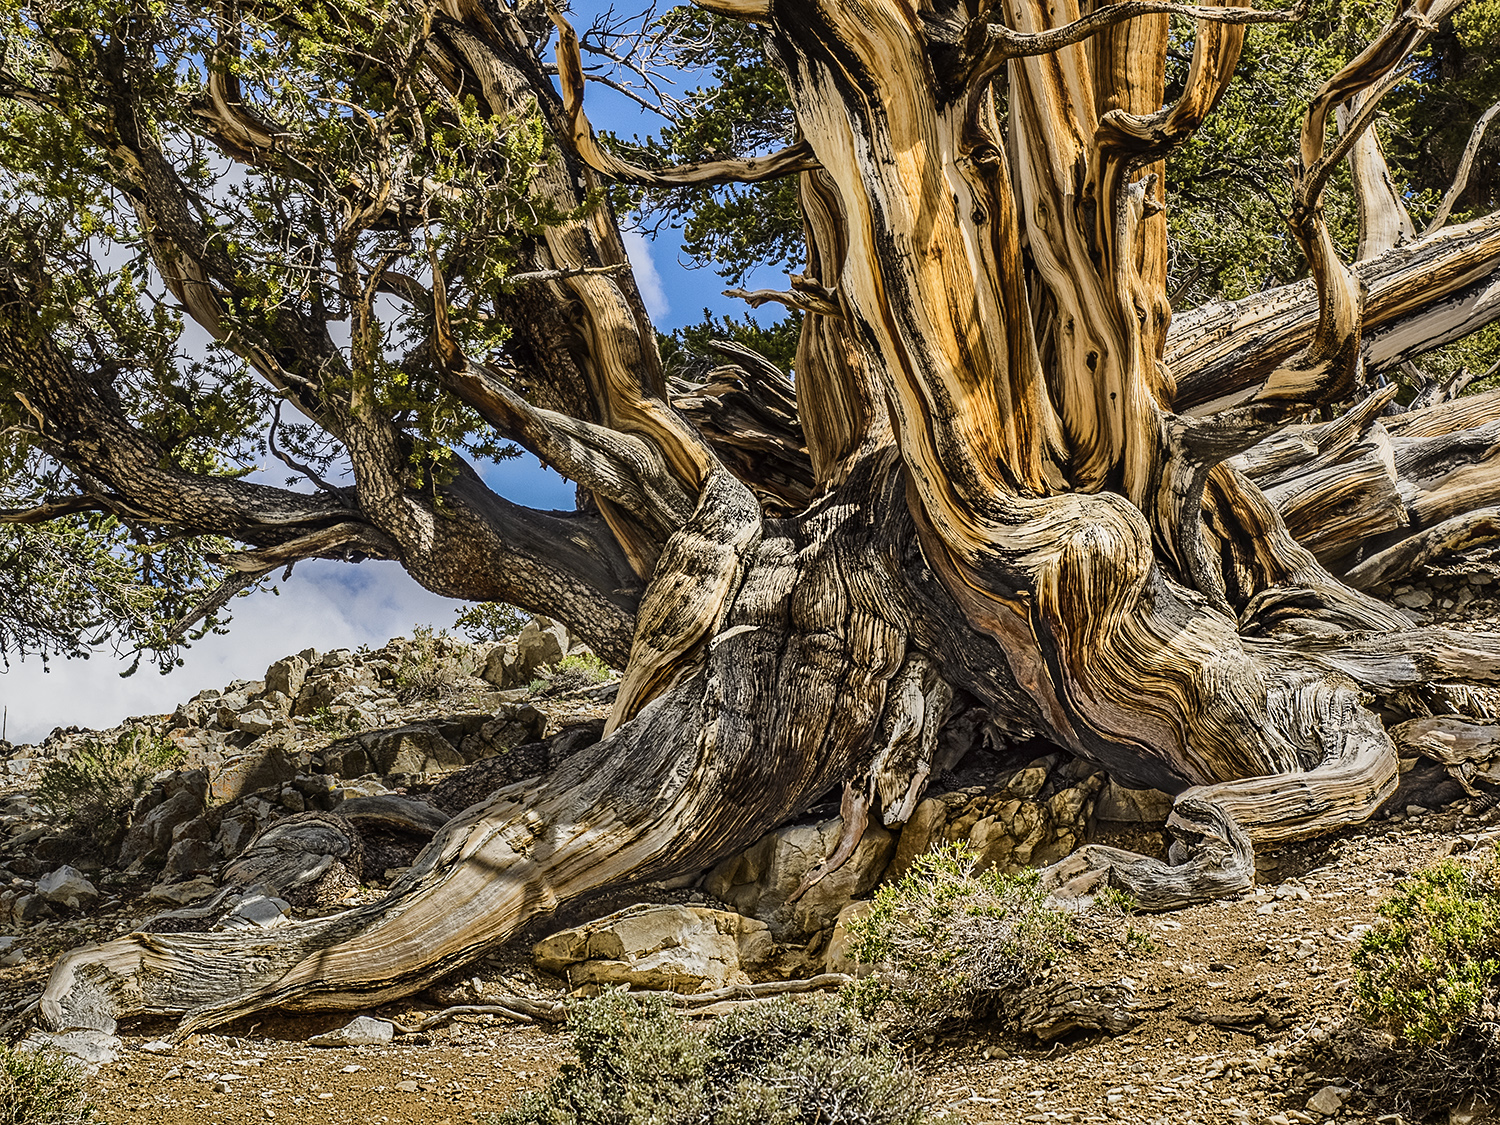 Bristlecone Pine